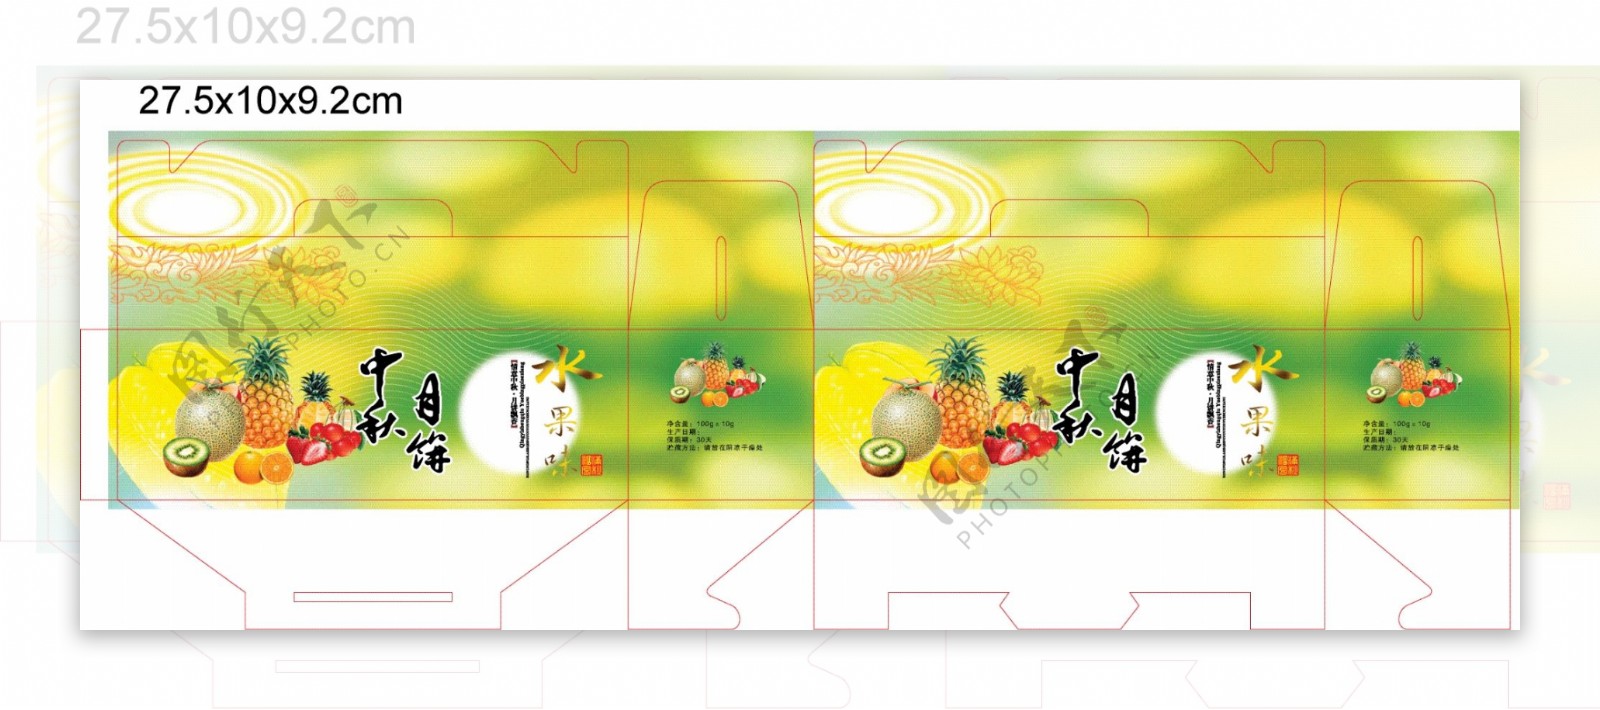 中秋月饼盒水果味图片